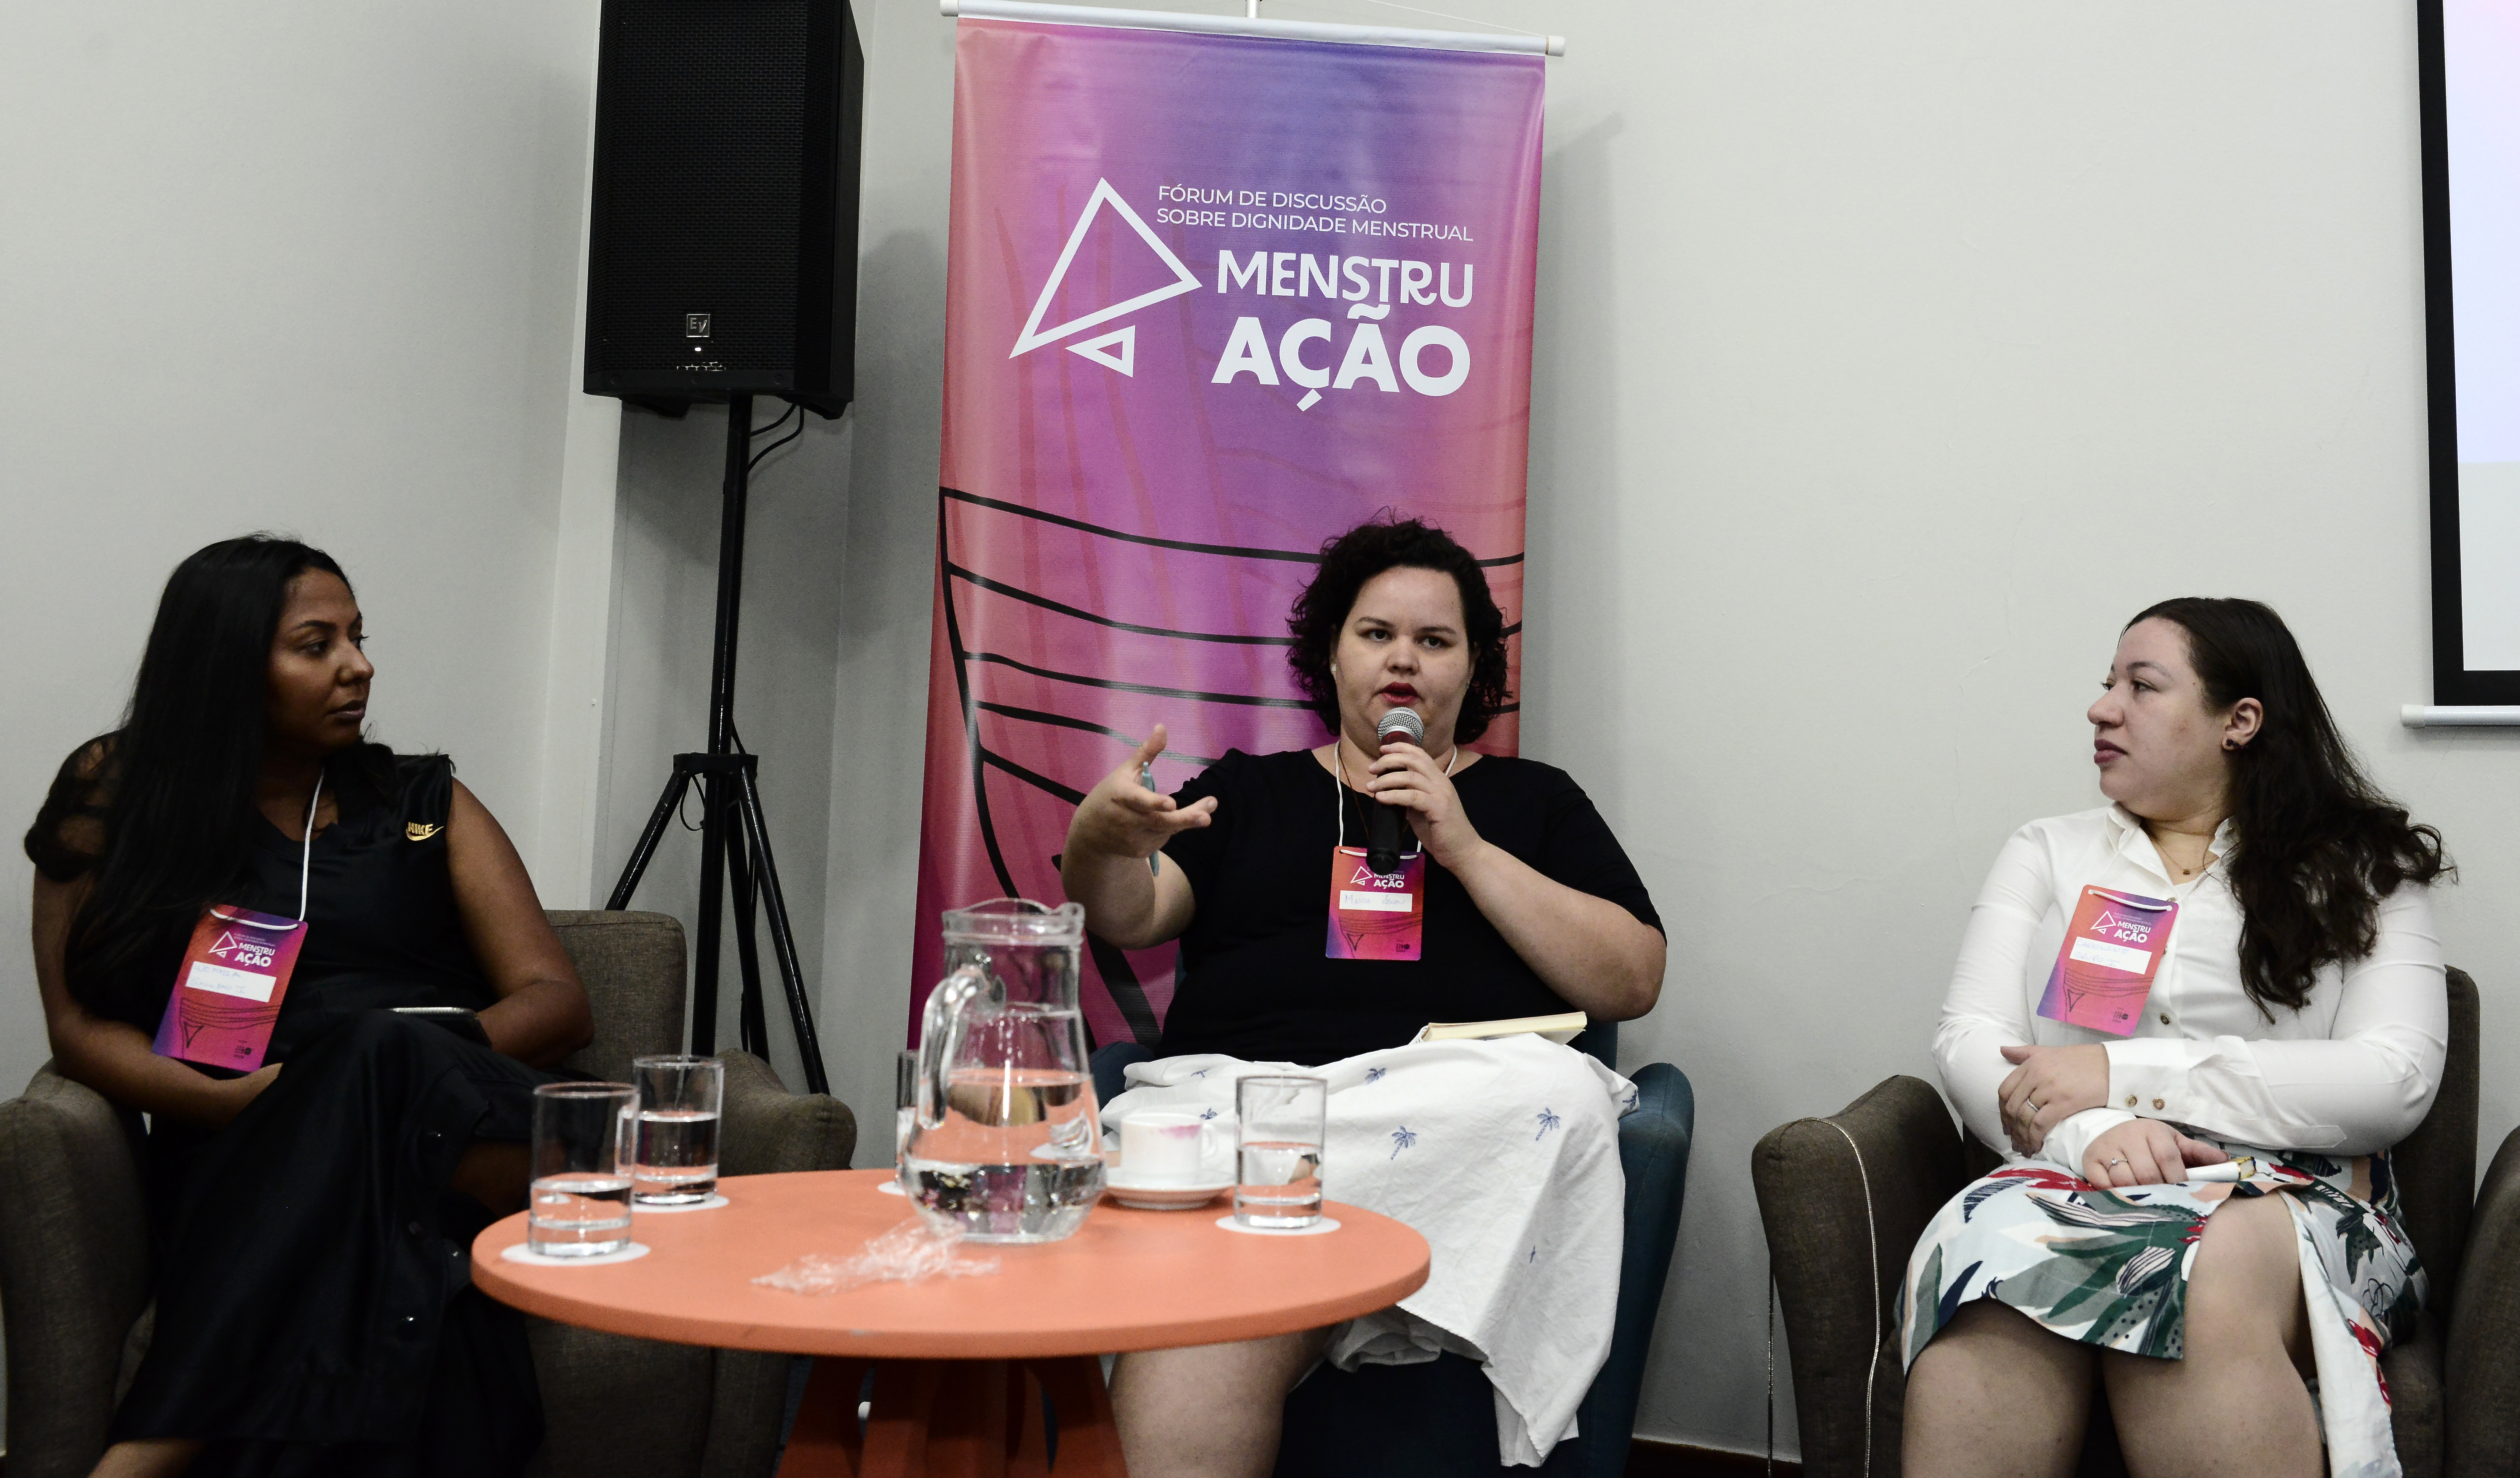 Consultora do UNFPA, Masra Andrade apresenta resultado de pesquisa sobre Dignidade Menstrual. Foto: ©UNFPA/Sheila Leal